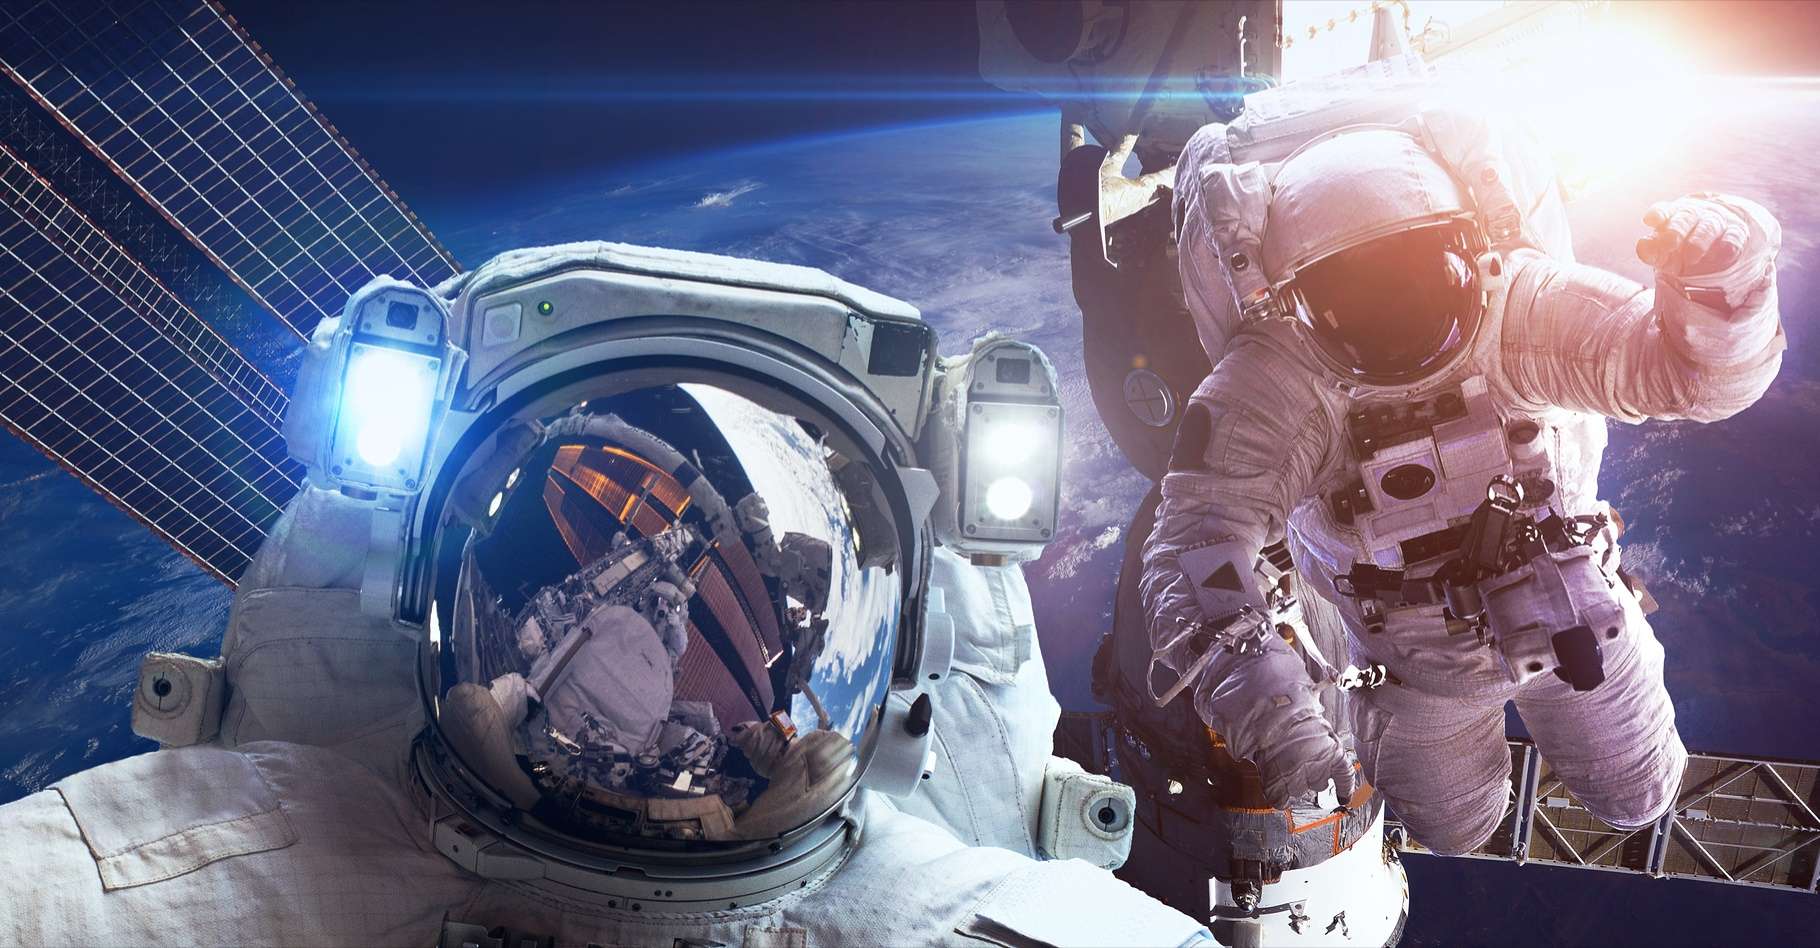 La Nasa lance un appel à candidatures pour des nouveaux astronautes